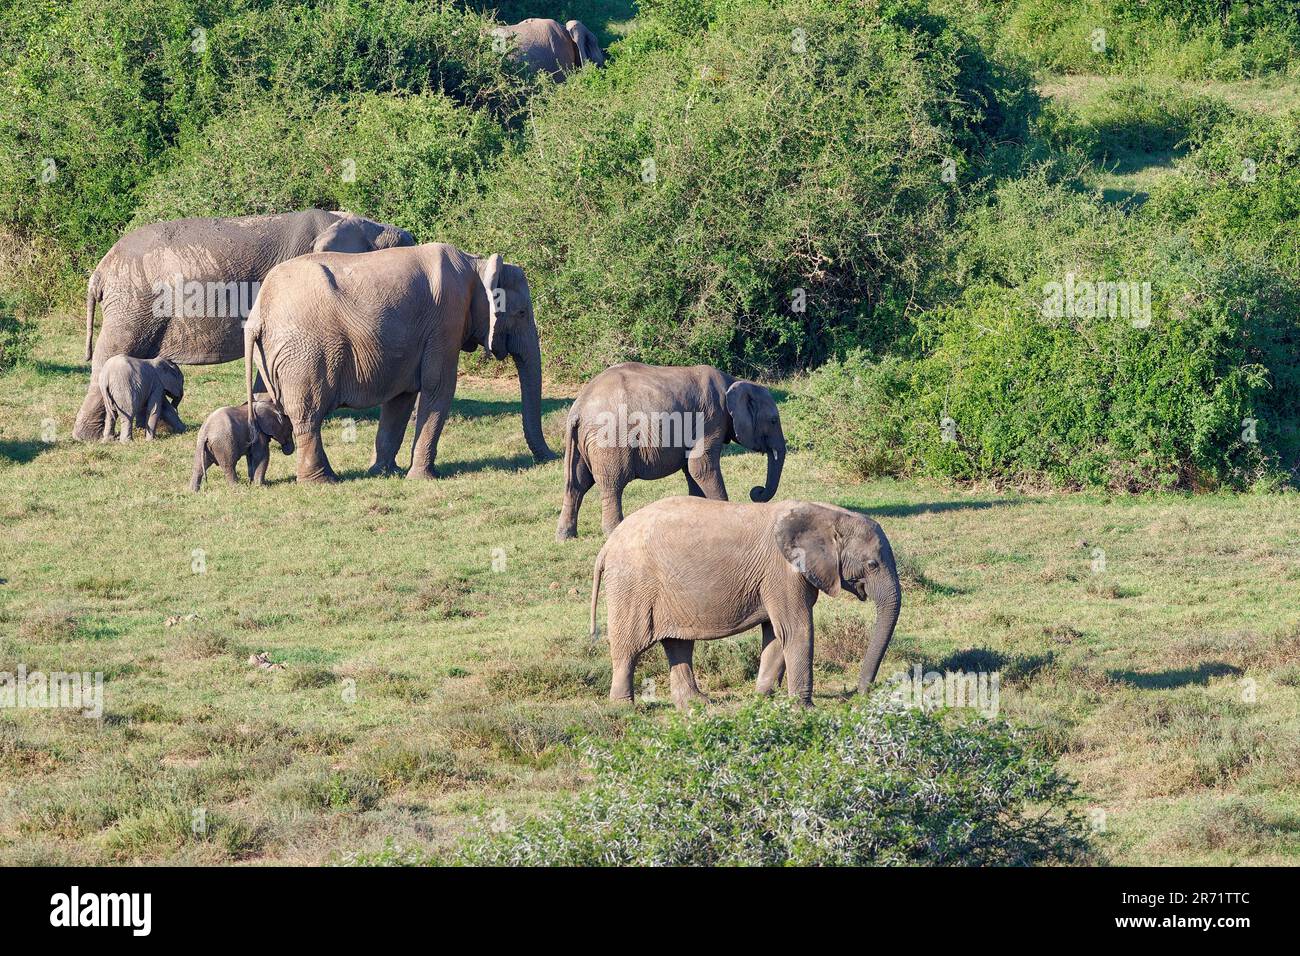 Afrikanische Buschelefanten (Loxodonta africana), Herde, Mutter mit Babys und junge Fütterung von Gras, Addo Elephant NP, Ostkap, Südafrika, Afrika Stockfoto